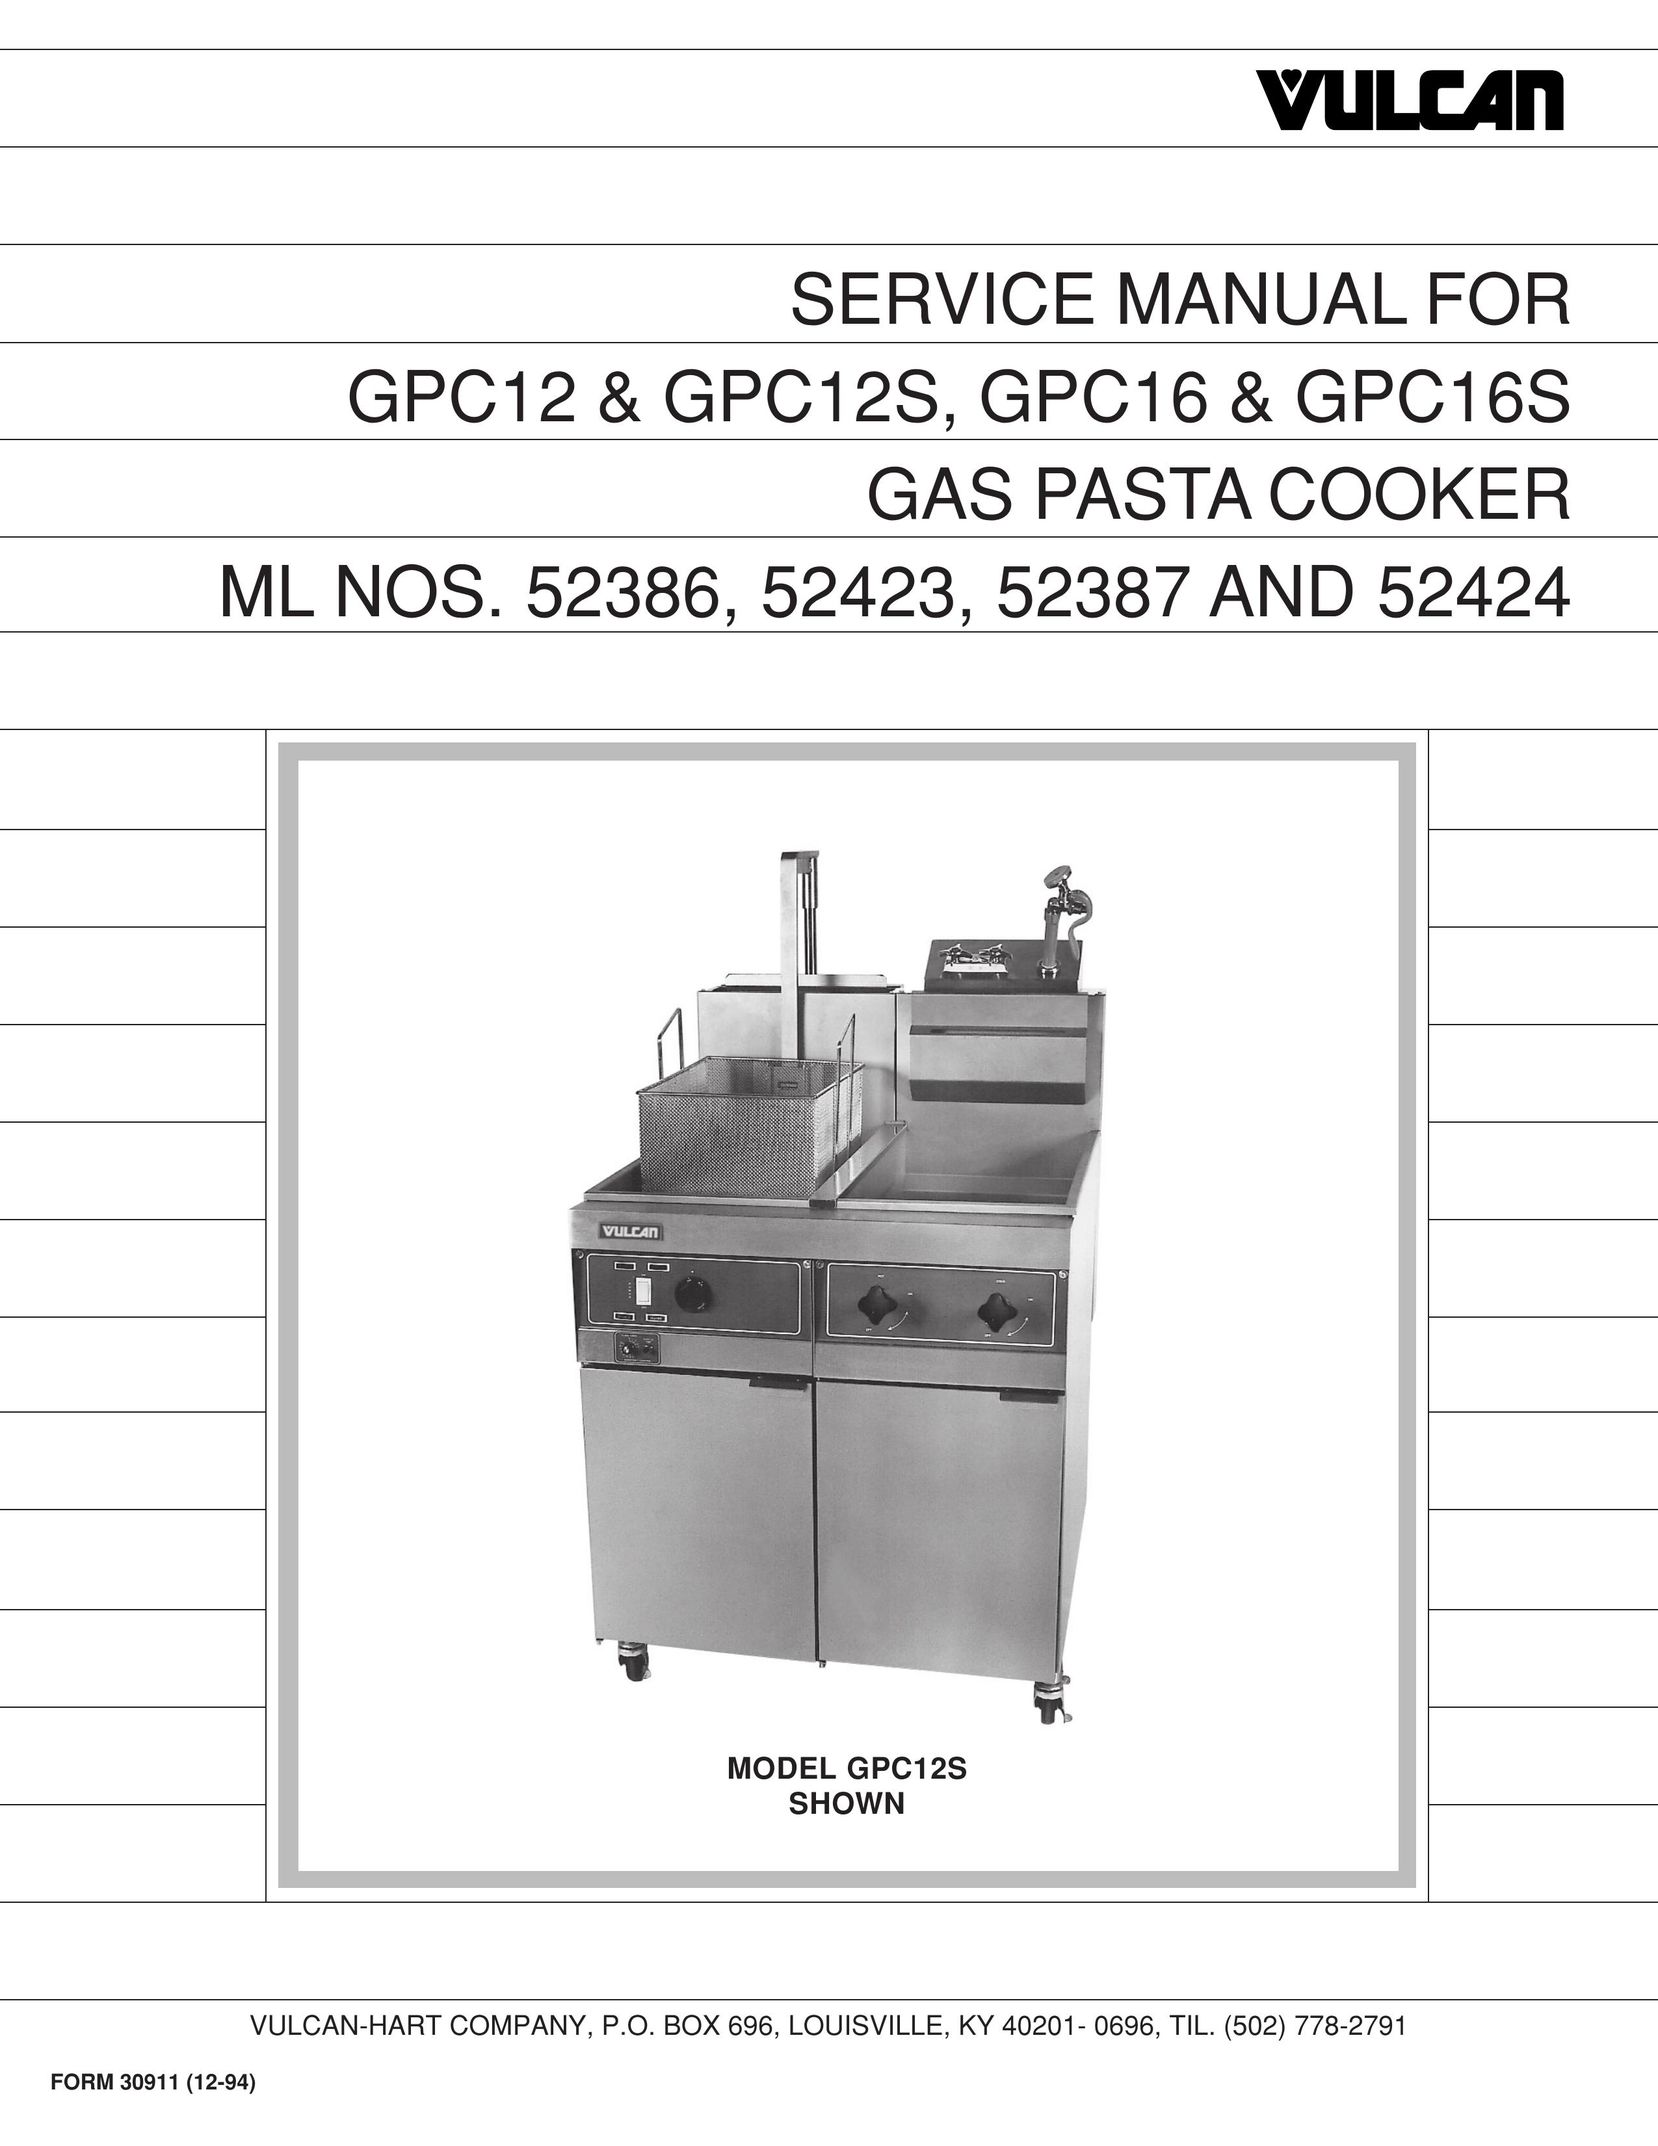 Vulcan-Hart 52424 Pasta Maker User Manual